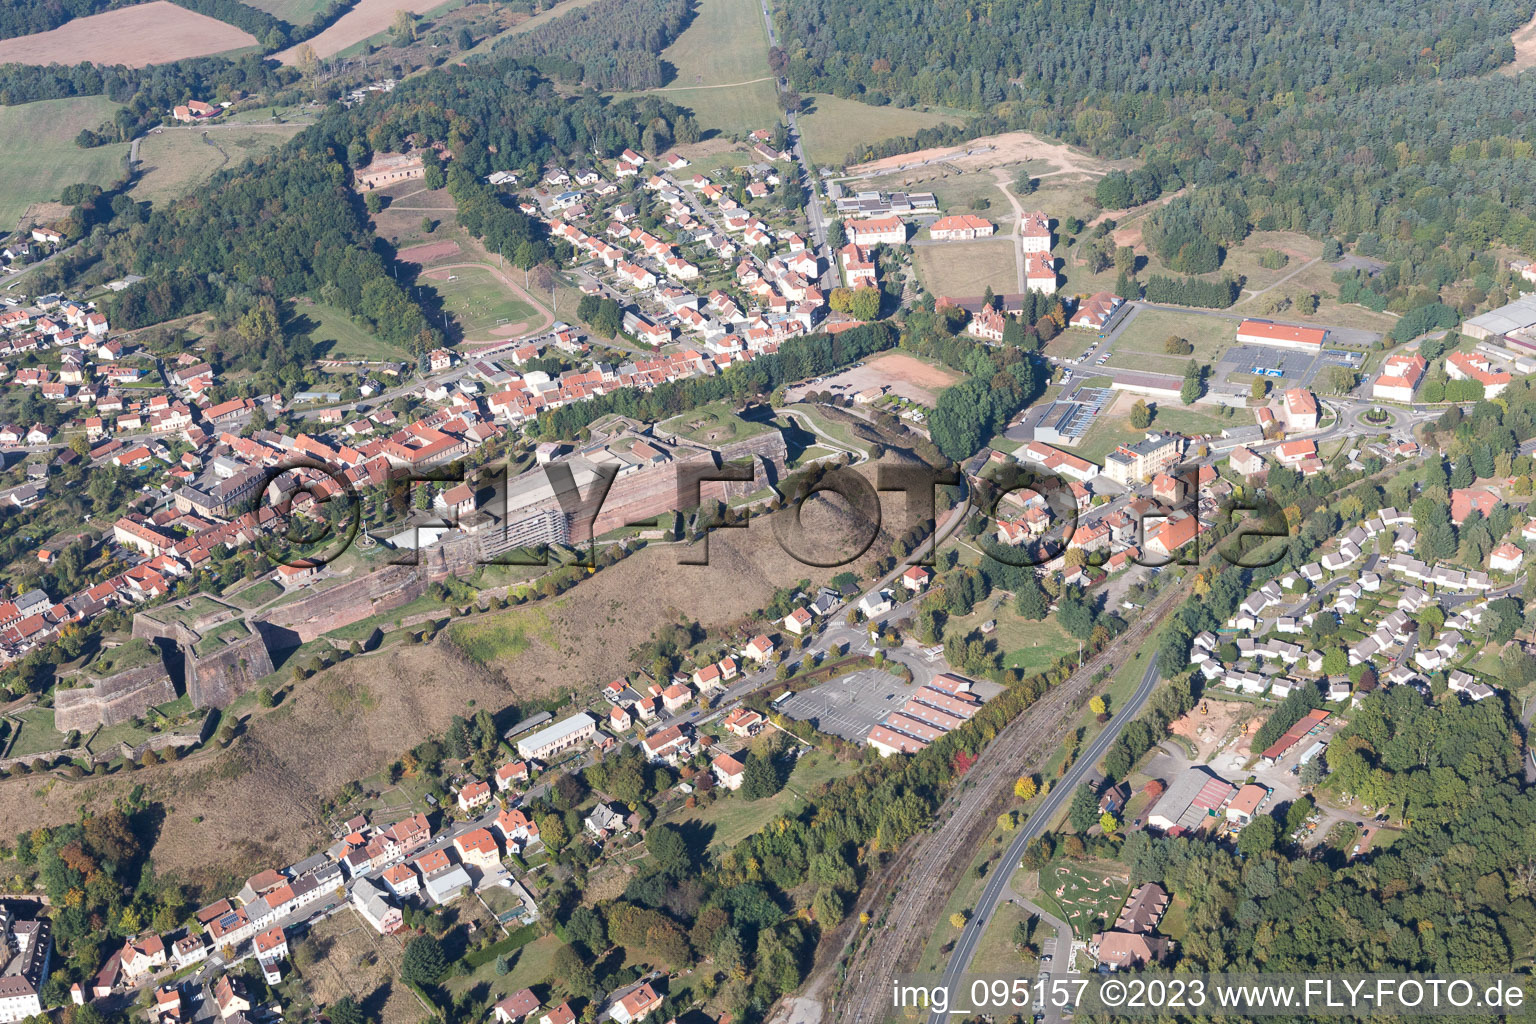 Bitche im Bundesland Moselle, Frankreich aus der Luft betrachtet